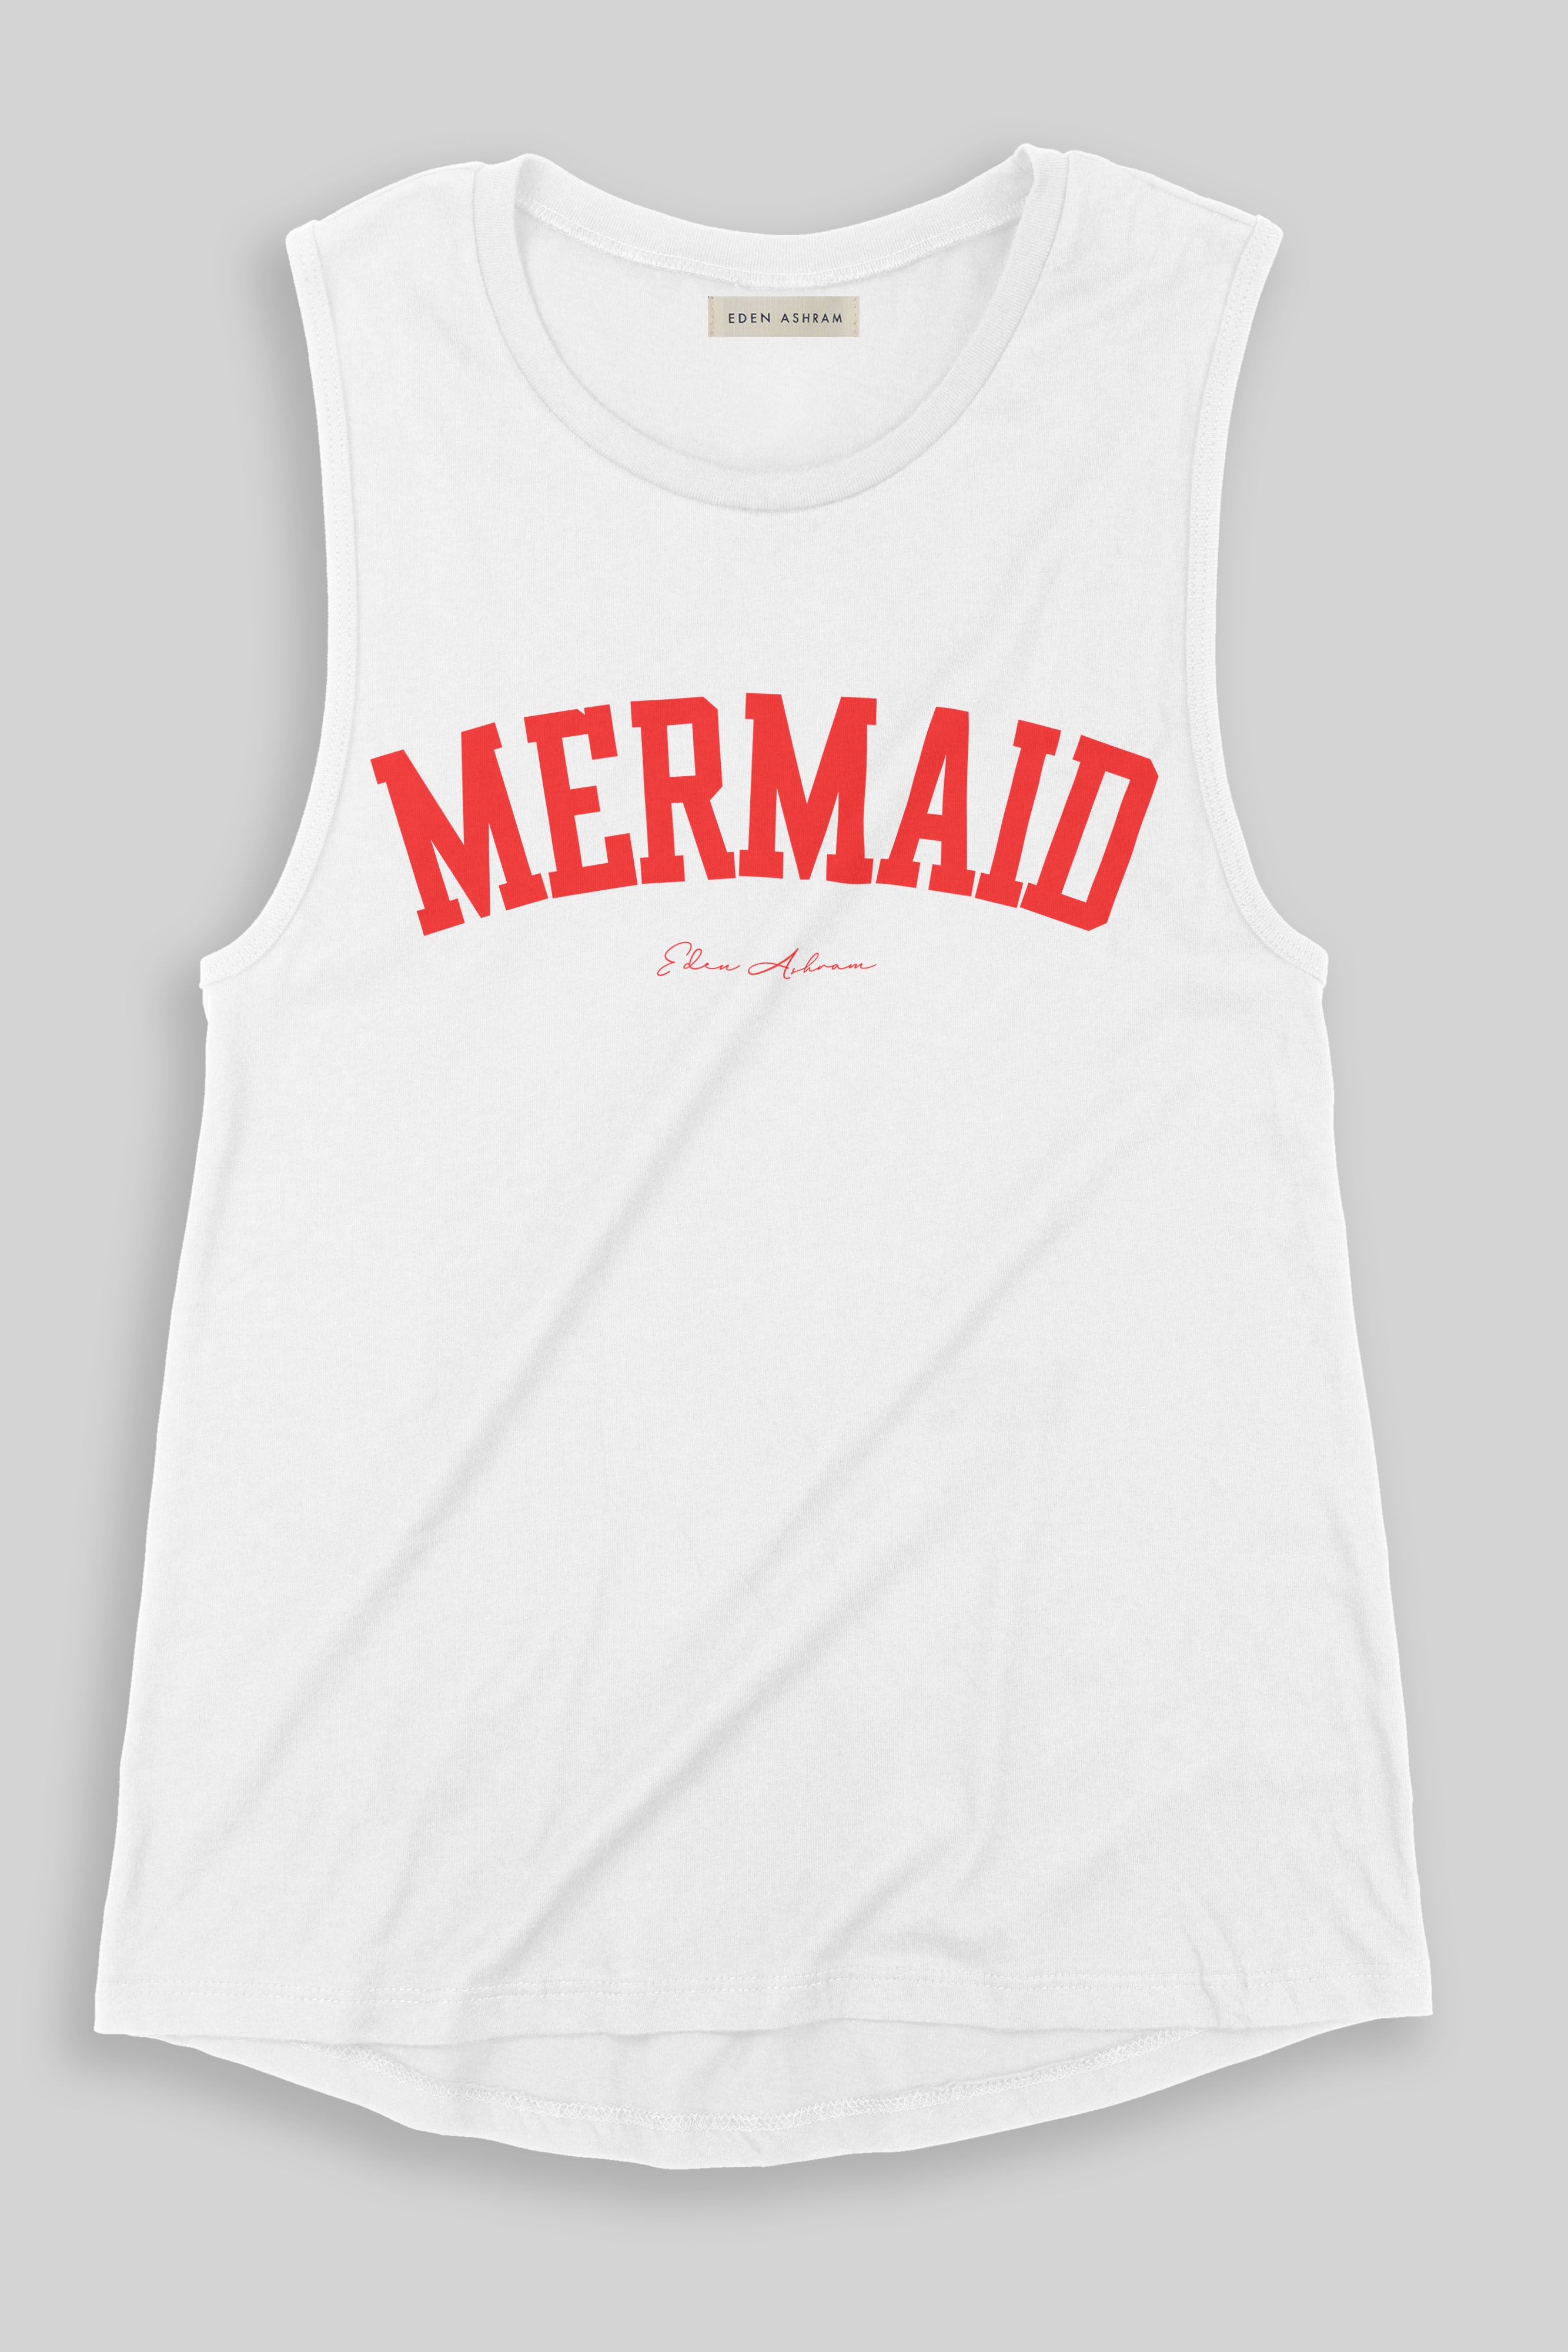 EDEN ASHRAM Mermaid Jersey Muscle Tank Vintage White